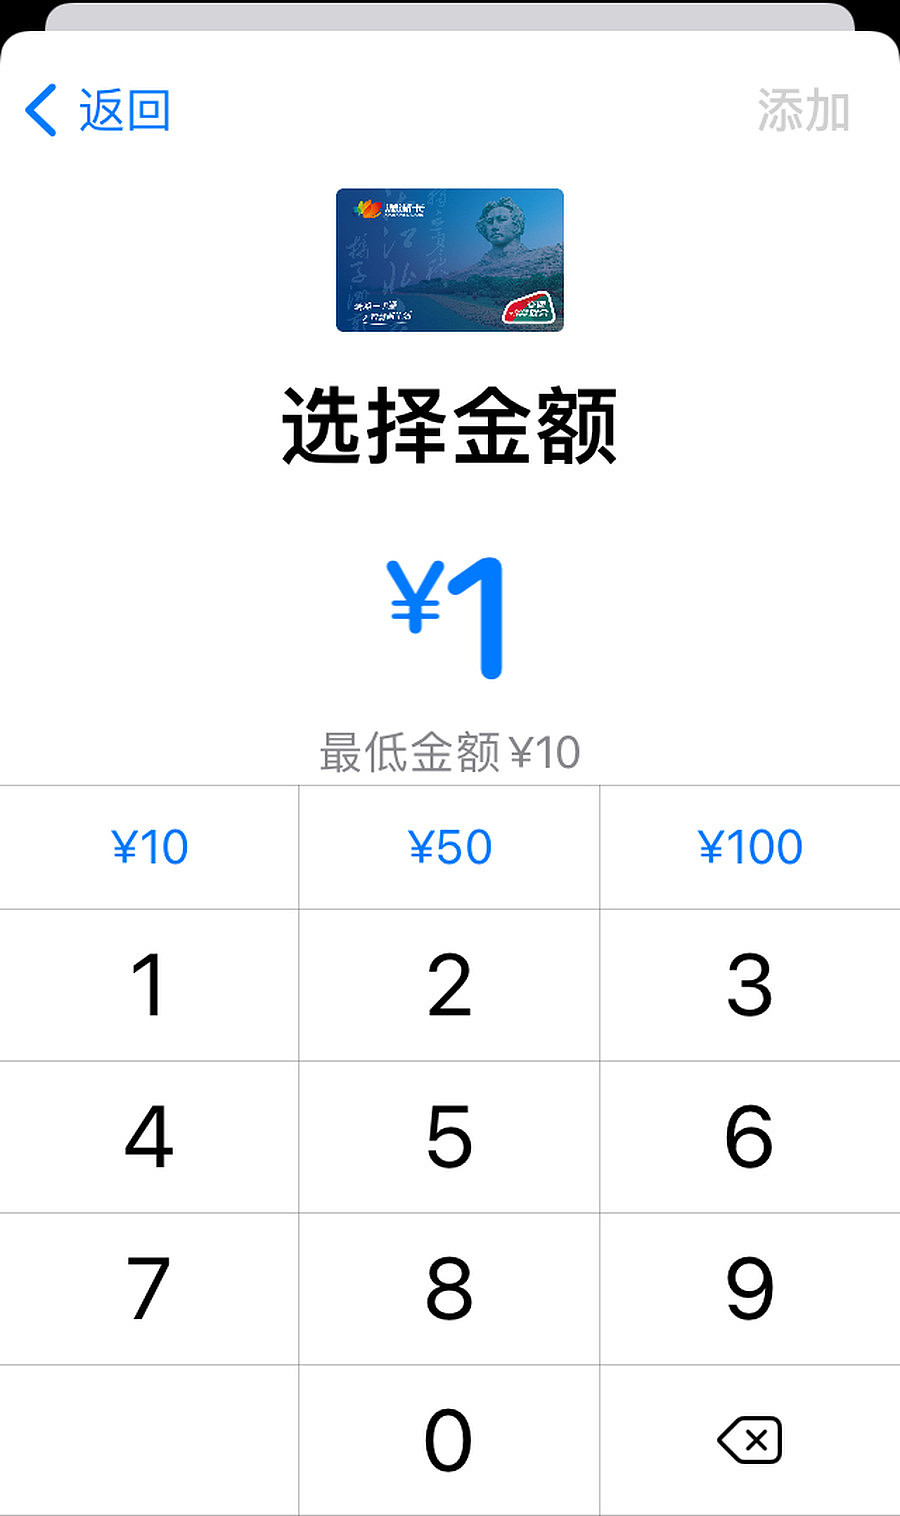 苹果Apple Pay加入长沙潇湘卡支持交通联合